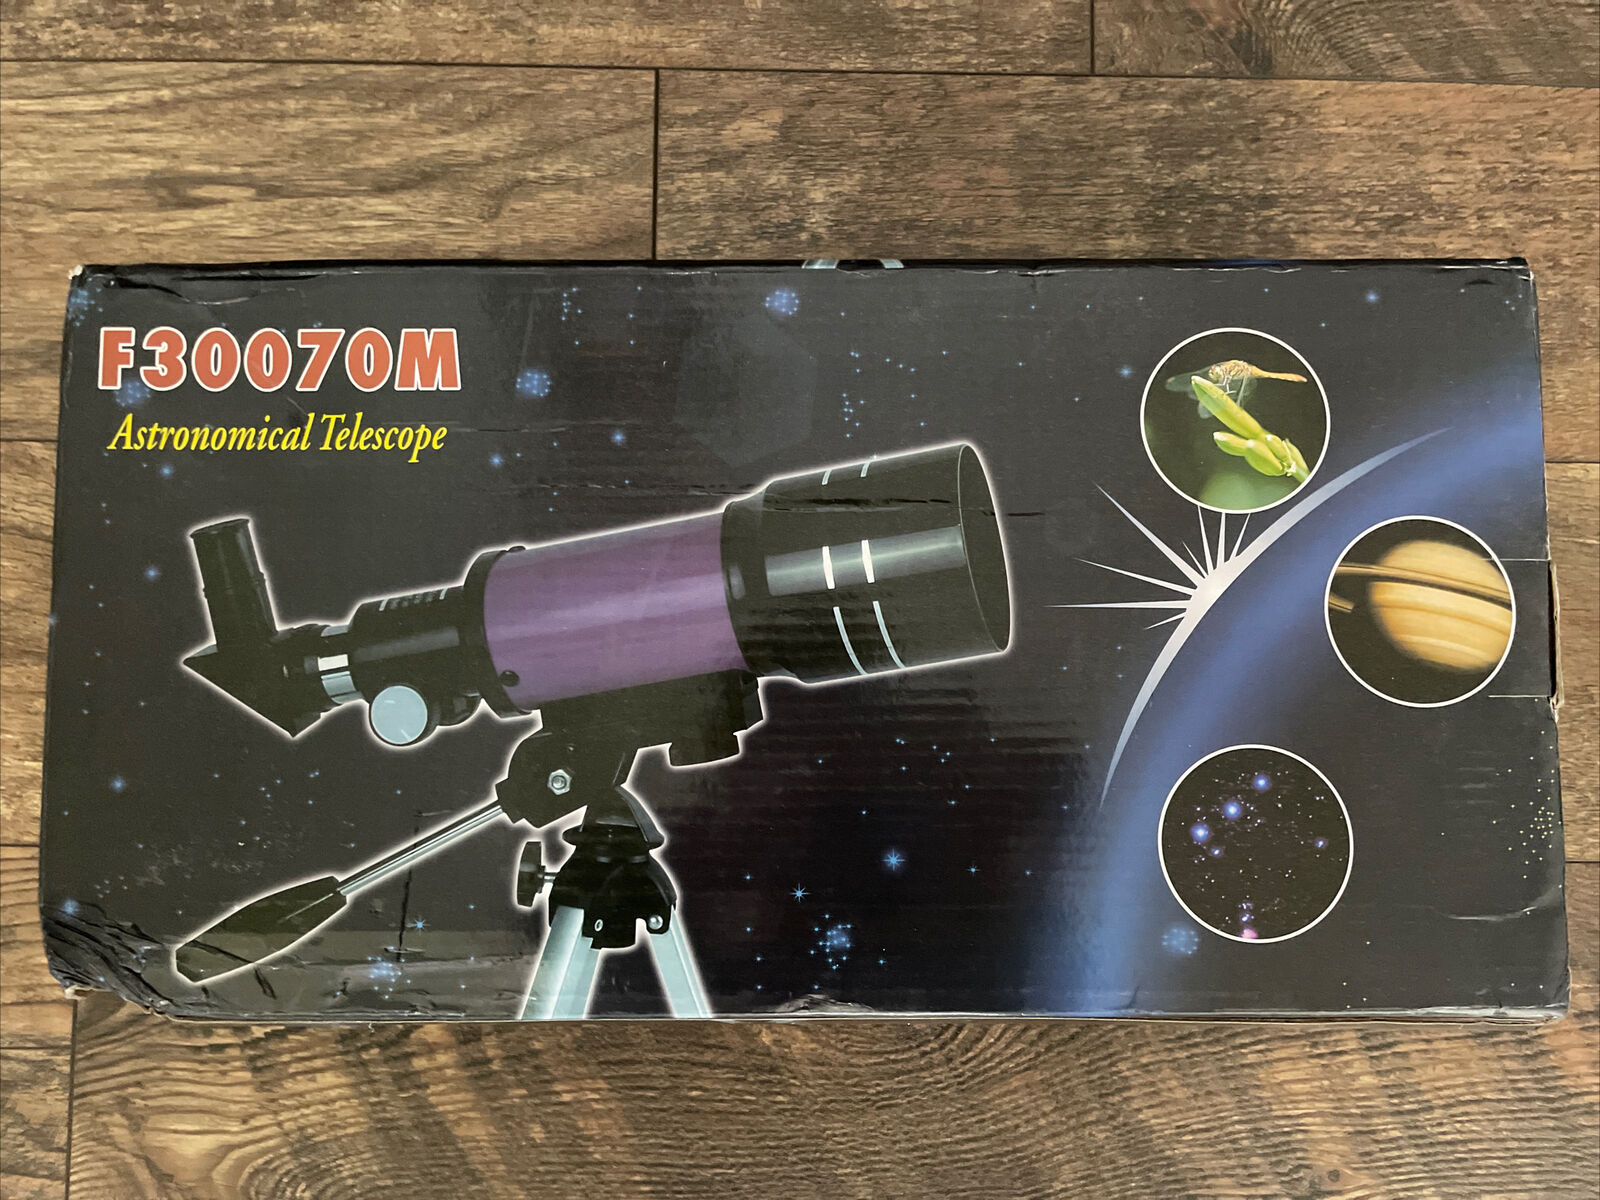 F30070M 70mm AstronomicalTelescope